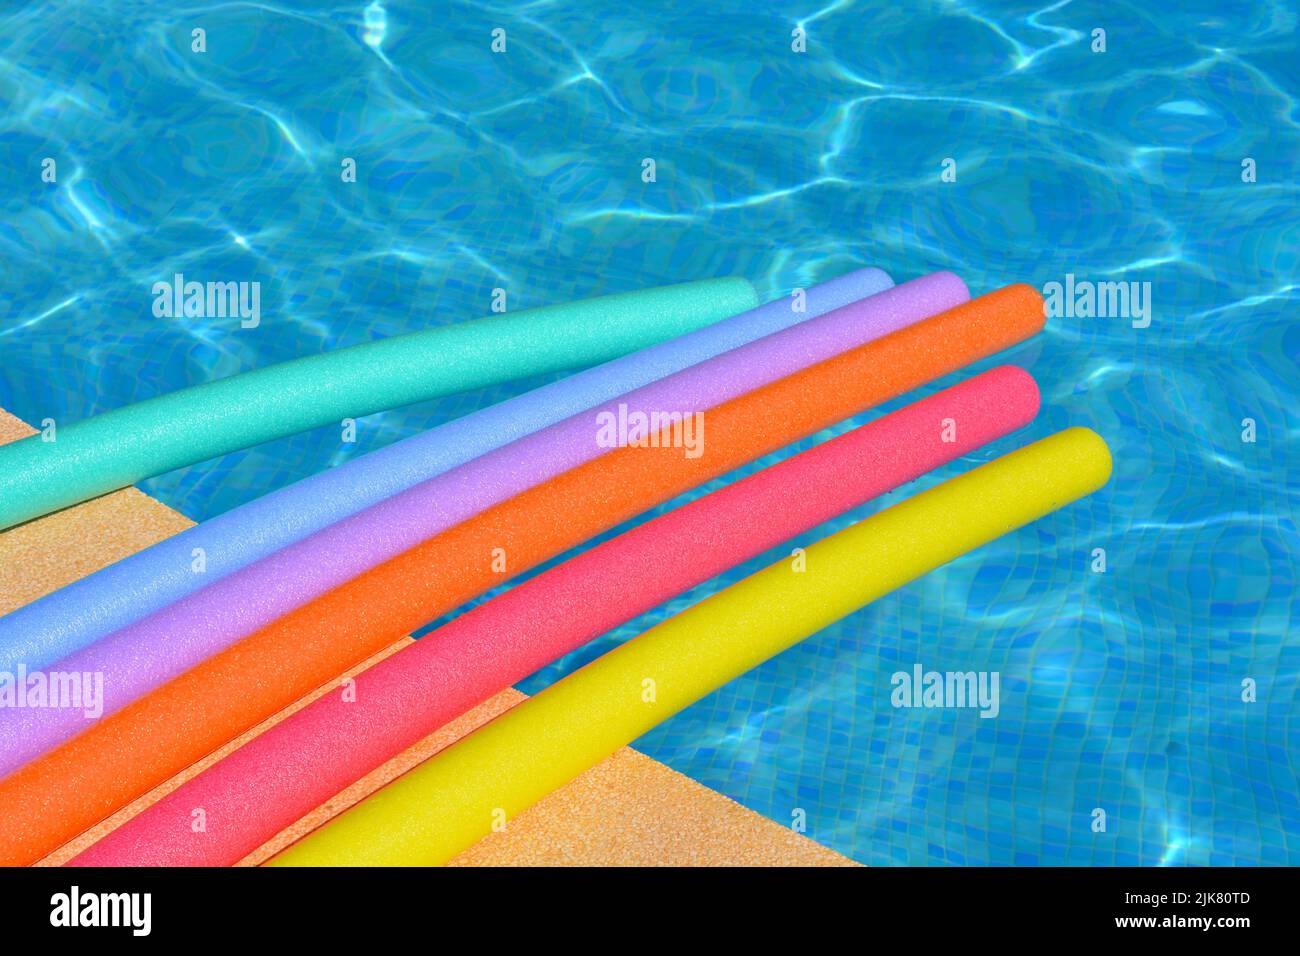 Vibraciones de verano. Fideos para nadar de color arco iris flotando al lado de la piscina Foto de stock